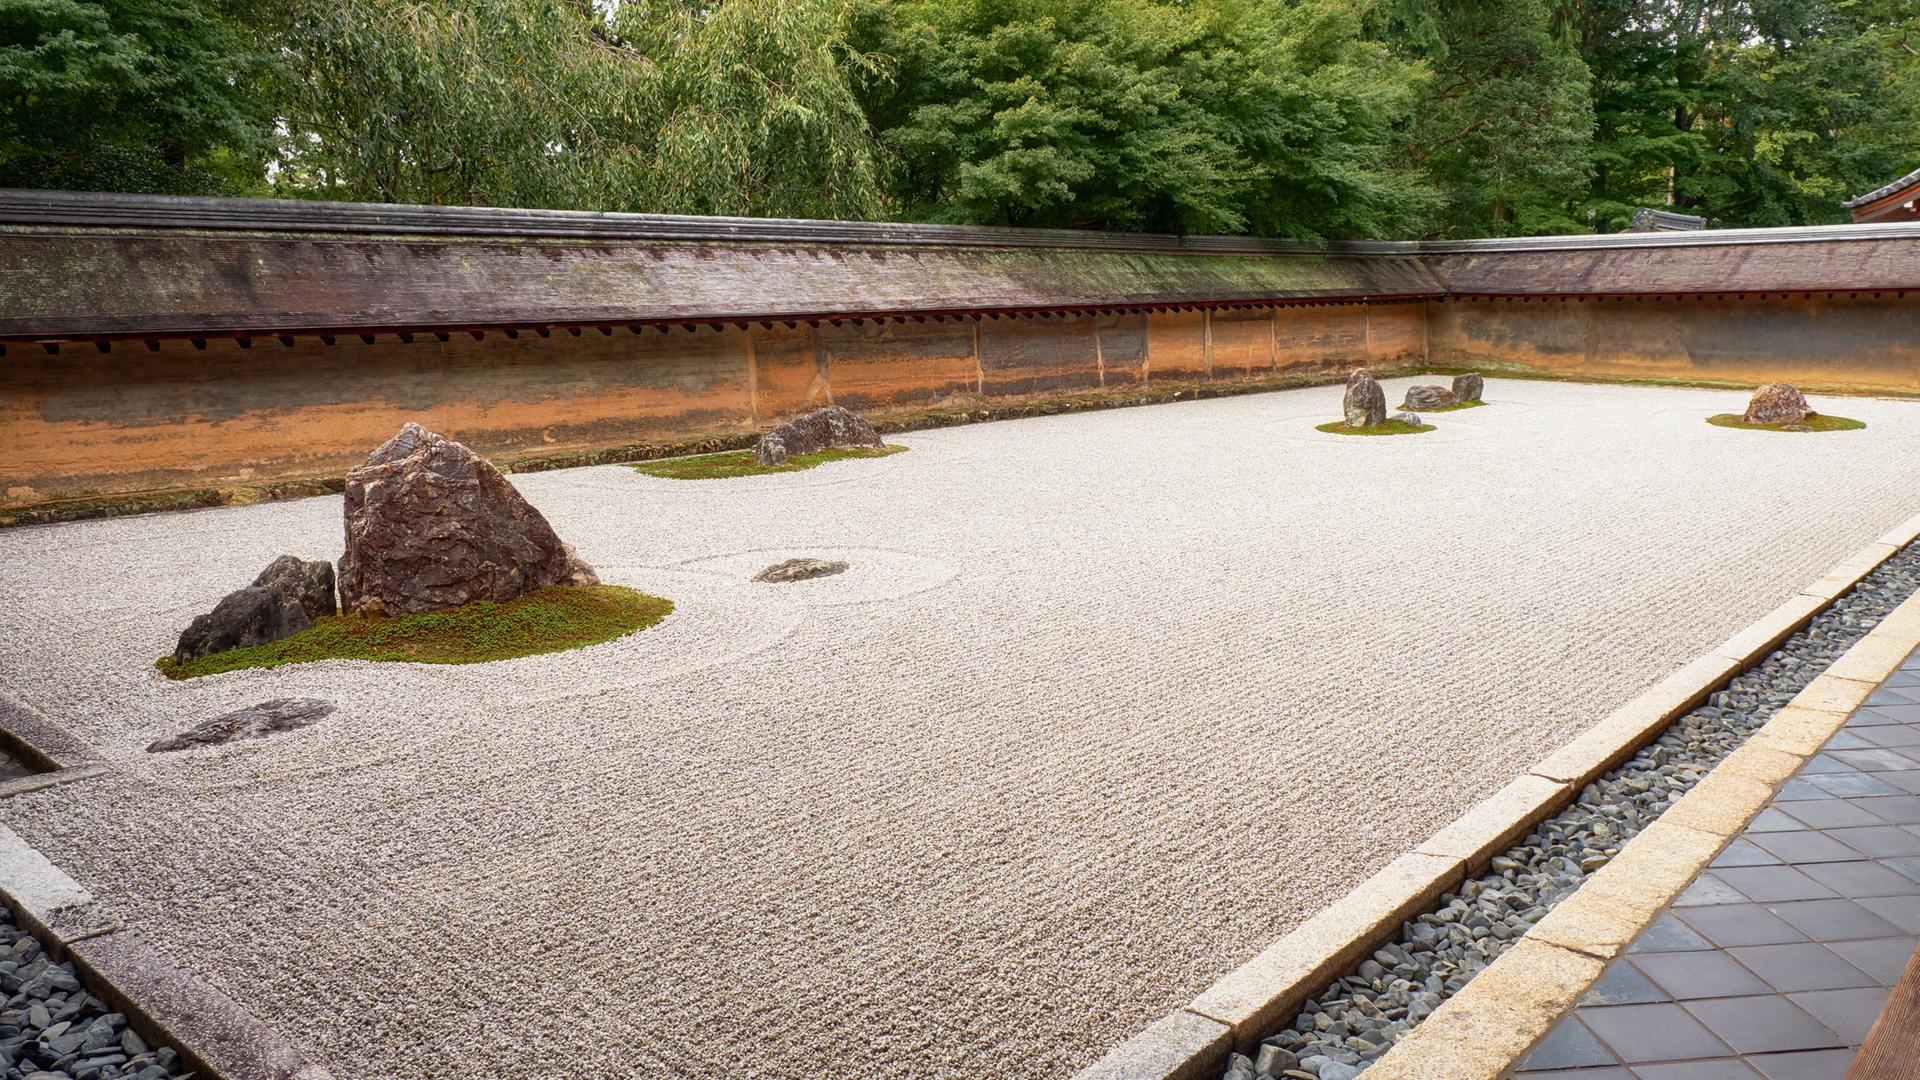 Ein Rechteck auf dem Boden, das mit Sand gefüllt ist, der ordentlich geharkt wurde. Im Sand sind Steine angeordnet. Es ist ein Steingarten am Ryōan-ji Tempel in Kyoto.